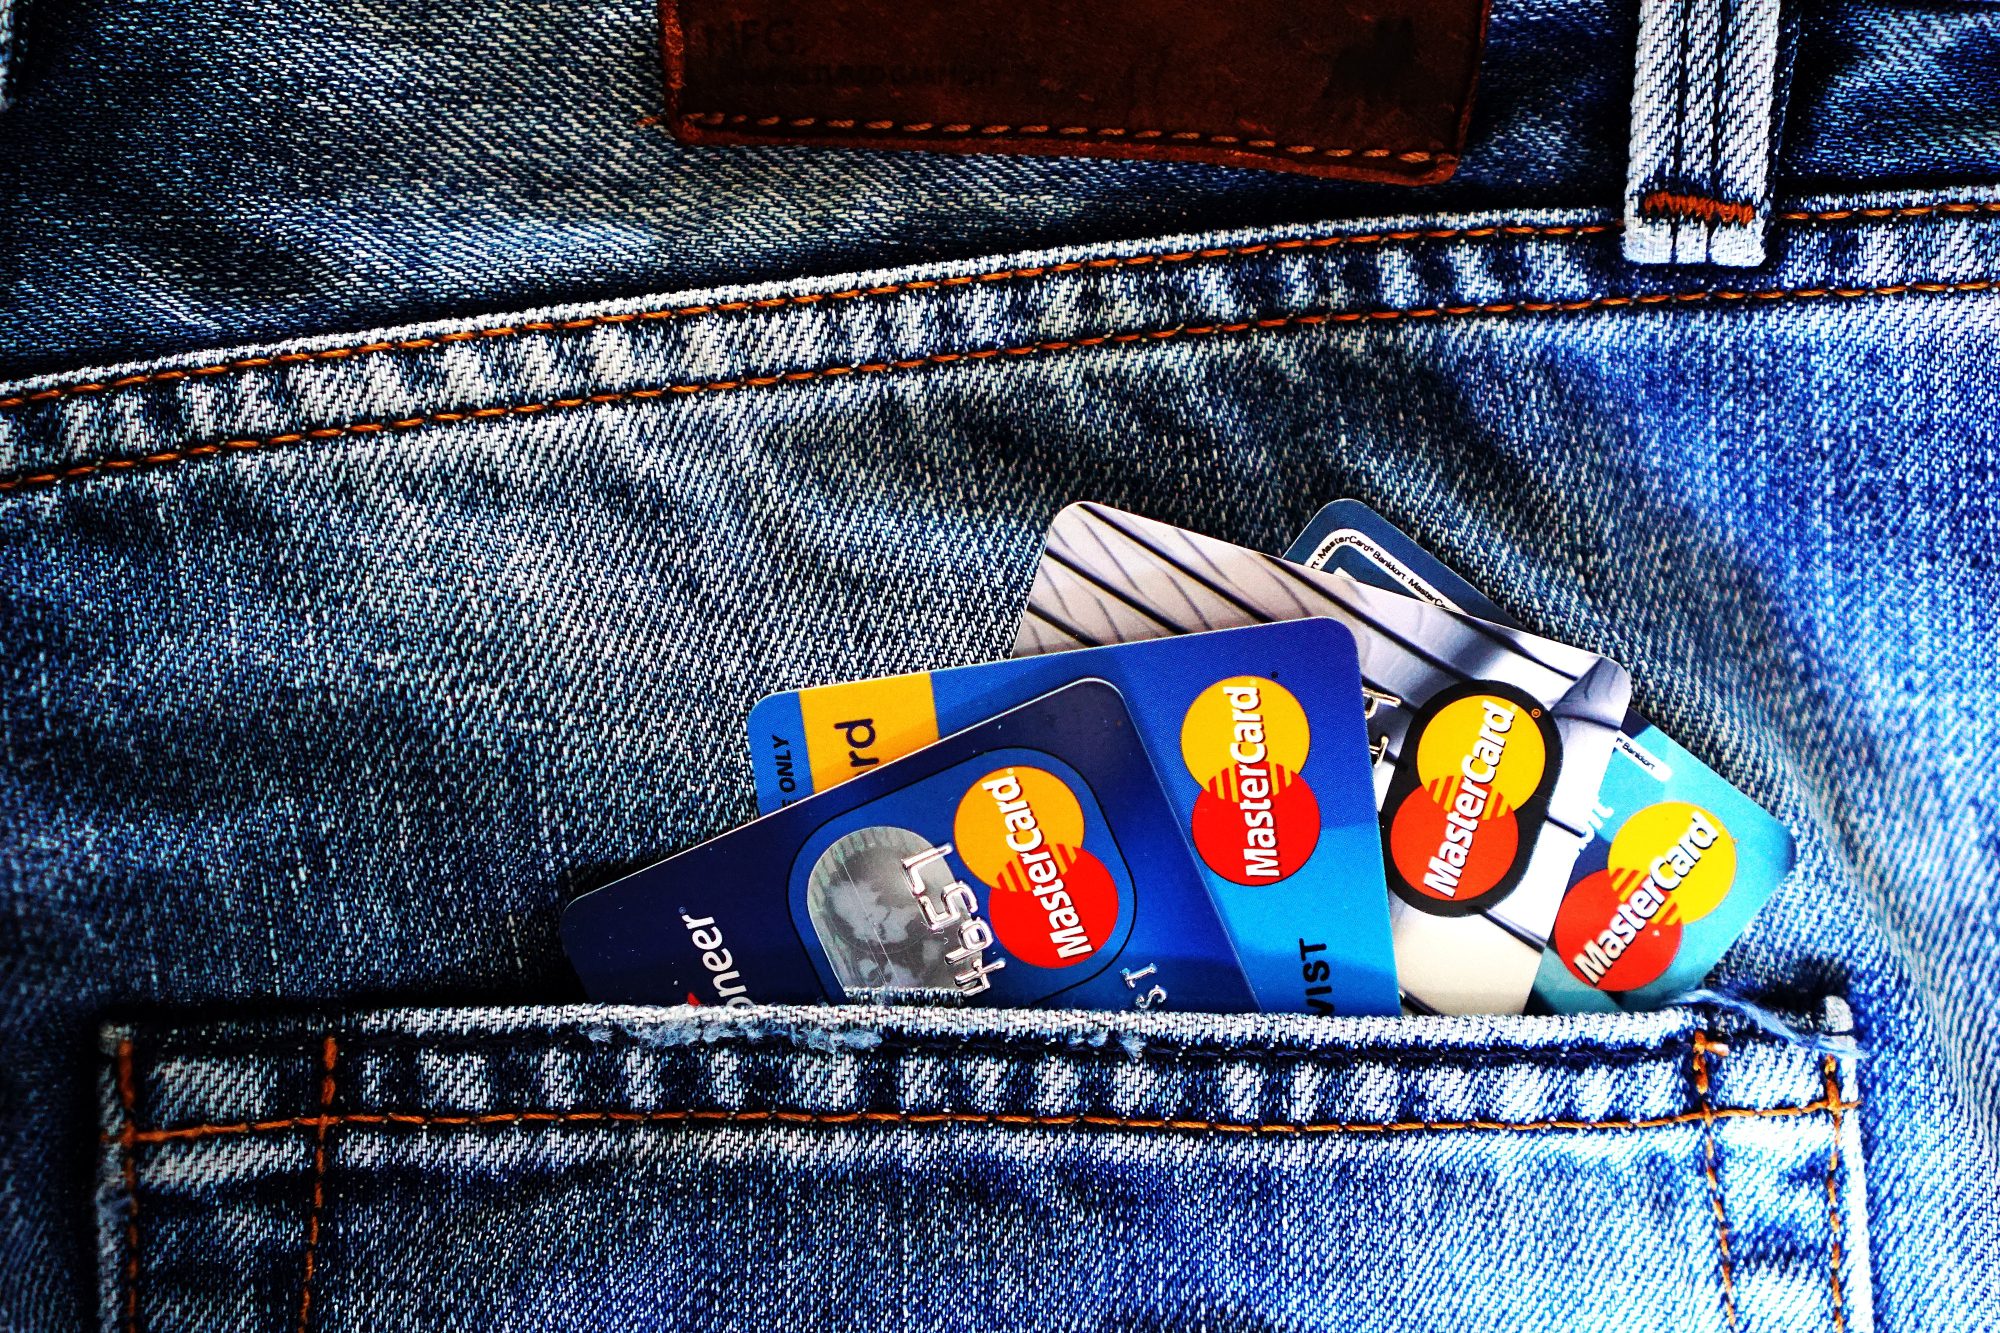 Hur lång tid tar det att hacka ett kreditkort?